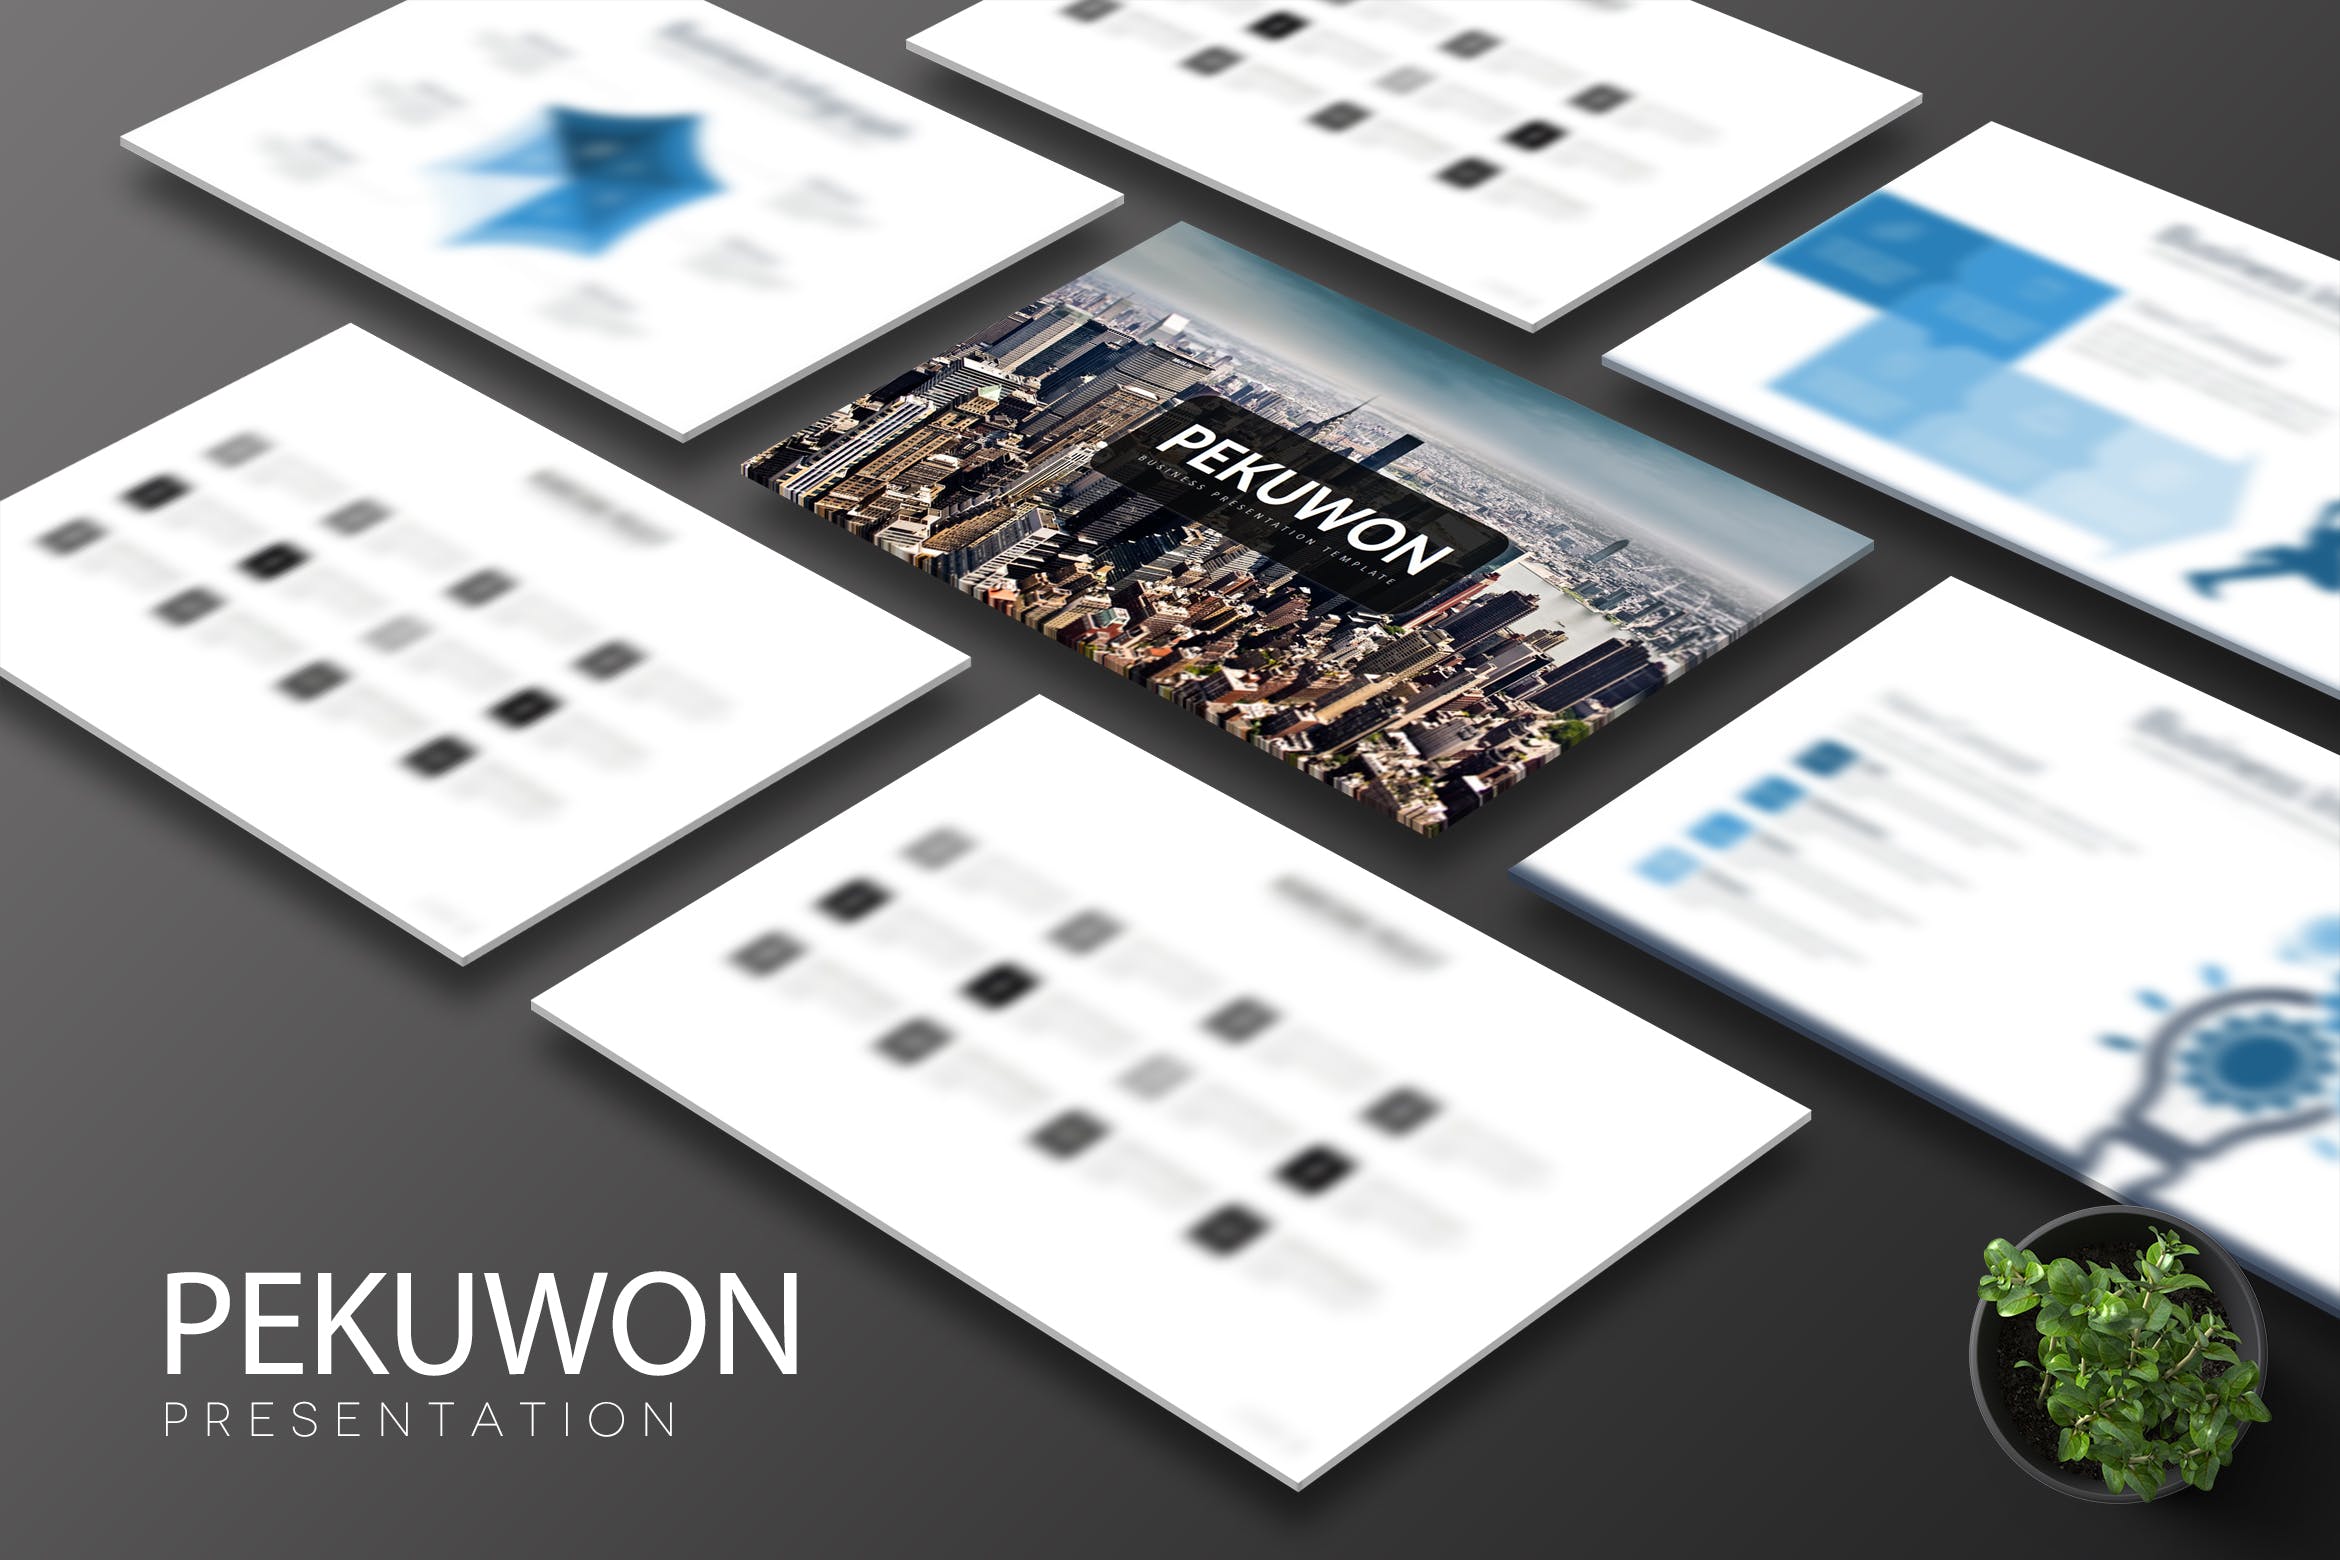 企业路演/融资/投标主题第一素材精选Keynote模板设计模板 Pekuwon – Keynote Template插图